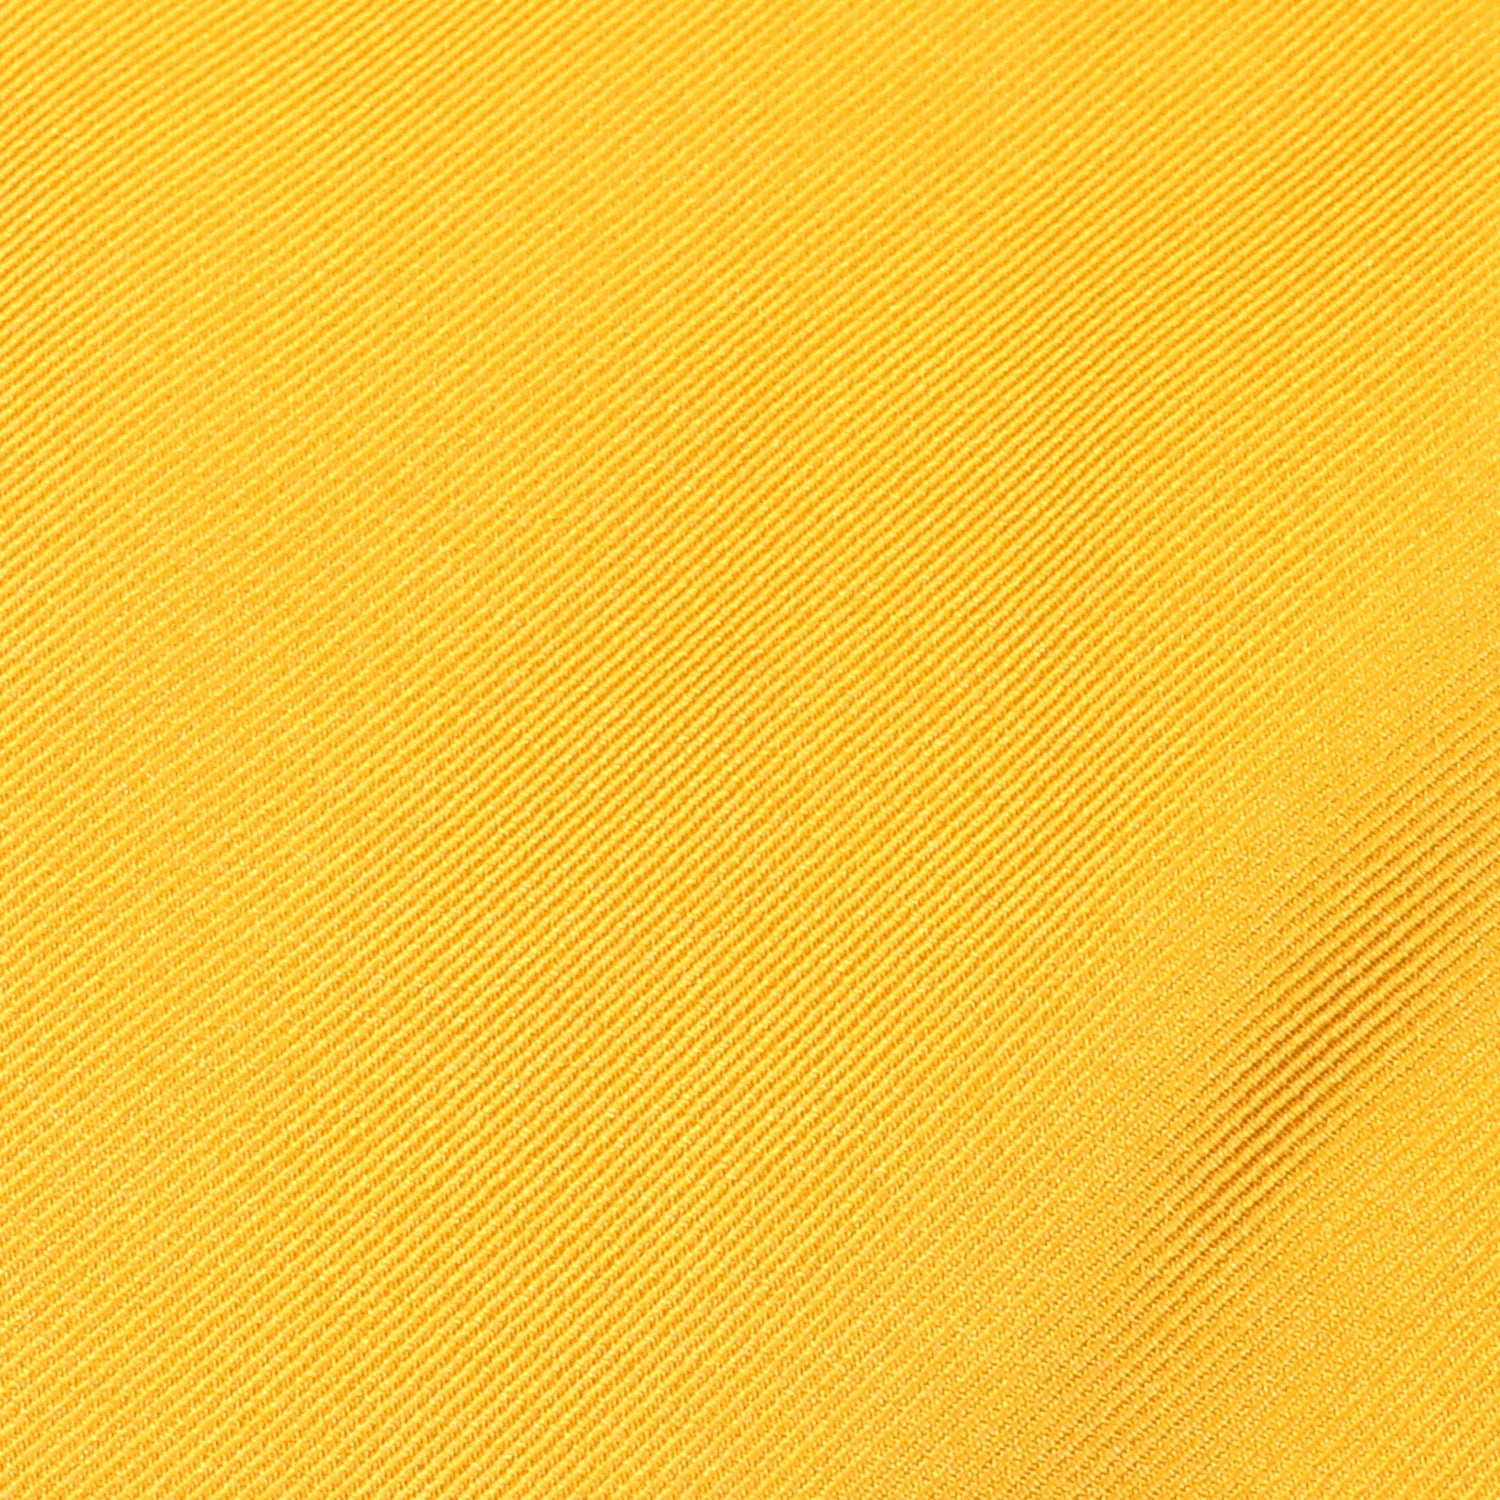 Banana Yellow Necktie Fabric